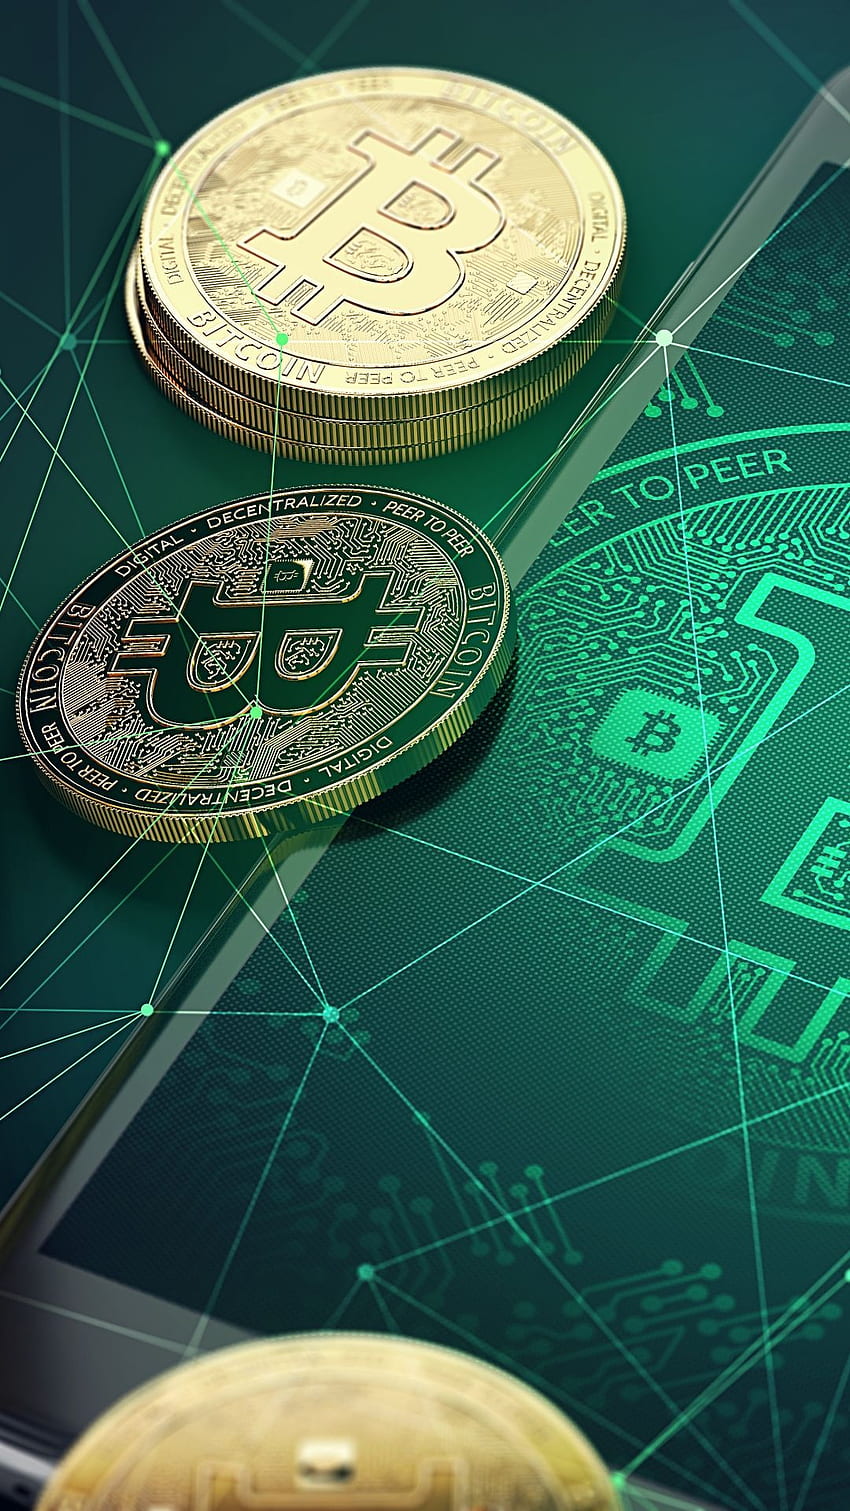 Teknologi Bitcoin uang koin bitcoin () Seluler. Bisnis Bitcoin, perangkat keras penambangan Bitcoin, pasar Bitcoin, Bitcoin Cash wallpaper ponsel HD